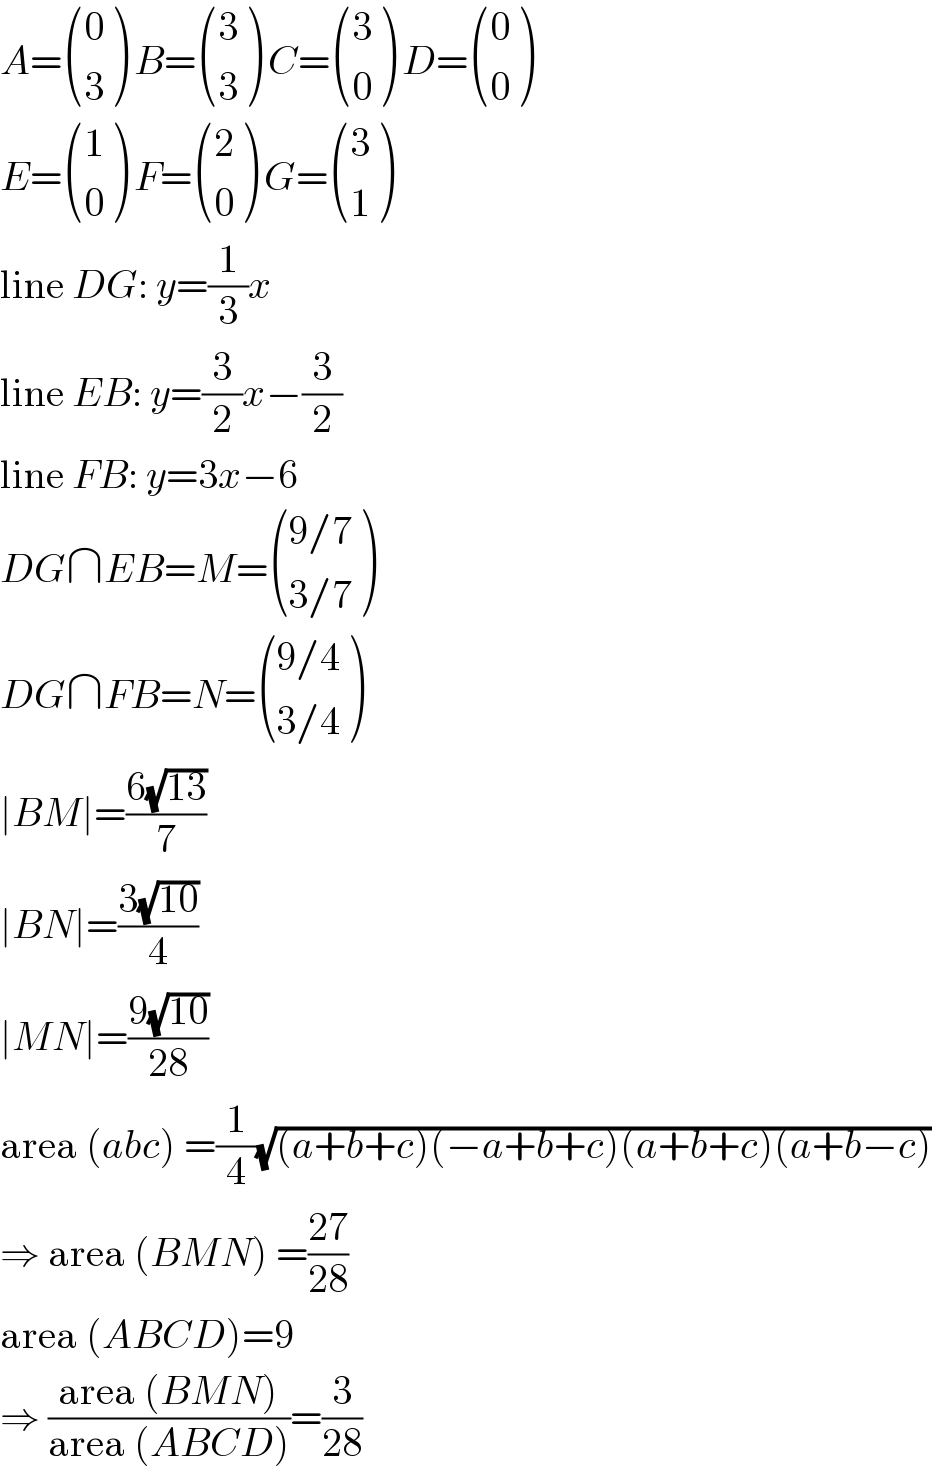 A= ((0),(3) ) B= ((3),(3) ) C= ((3),(0) ) D= ((0),(0) )  E= ((1),(0) ) F= ((2),(0) ) G= ((3),(1) )  line DG: y=(1/3)x  line EB: y=(3/2)x−(3/2)  line FB: y=3x−6  DG∩EB=M= (((9/7)),((3/7)) )  DG∩FB=N= (((9/4)),((3/4)) )  ∣BM∣=((6(√(13)))/7)  ∣BN∣=((3(√(10)))/4)  ∣MN∣=((9(√(10)))/(28))  area (abc) =(1/4)(√((a+b+c)(−a+b+c)(a+b+c)(a+b−c)))  ⇒ area (BMN) =((27)/(28))  area (ABCD)=9  ⇒ ((area (BMN))/(area (ABCD)))=(3/(28))  